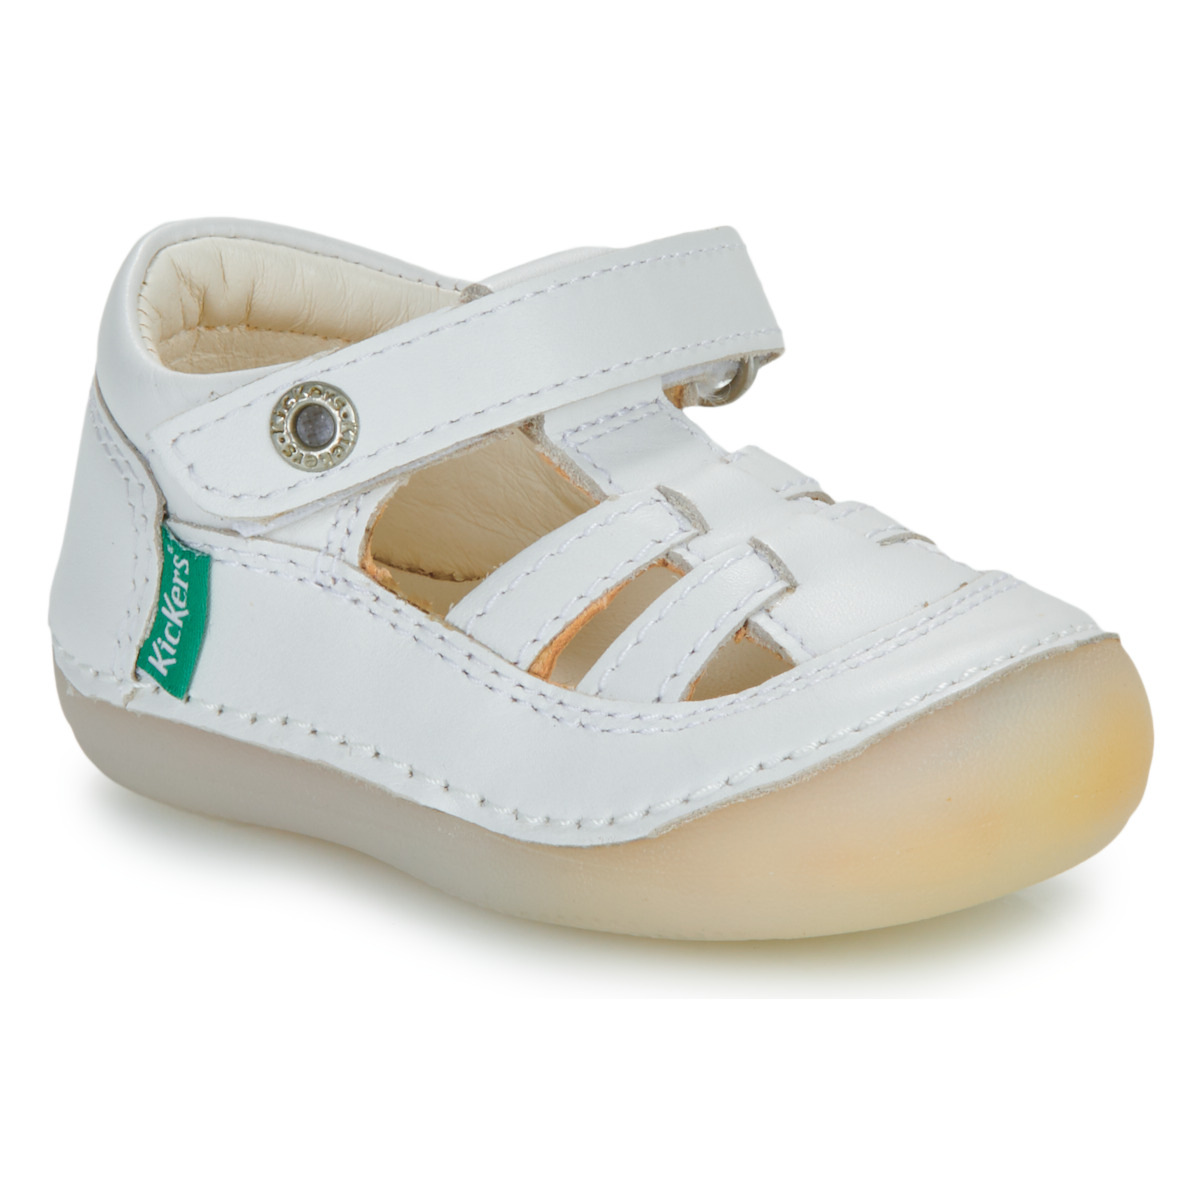 Schuhe Kinder Sandalen / Sandaletten Kickers SUSHY Weiss